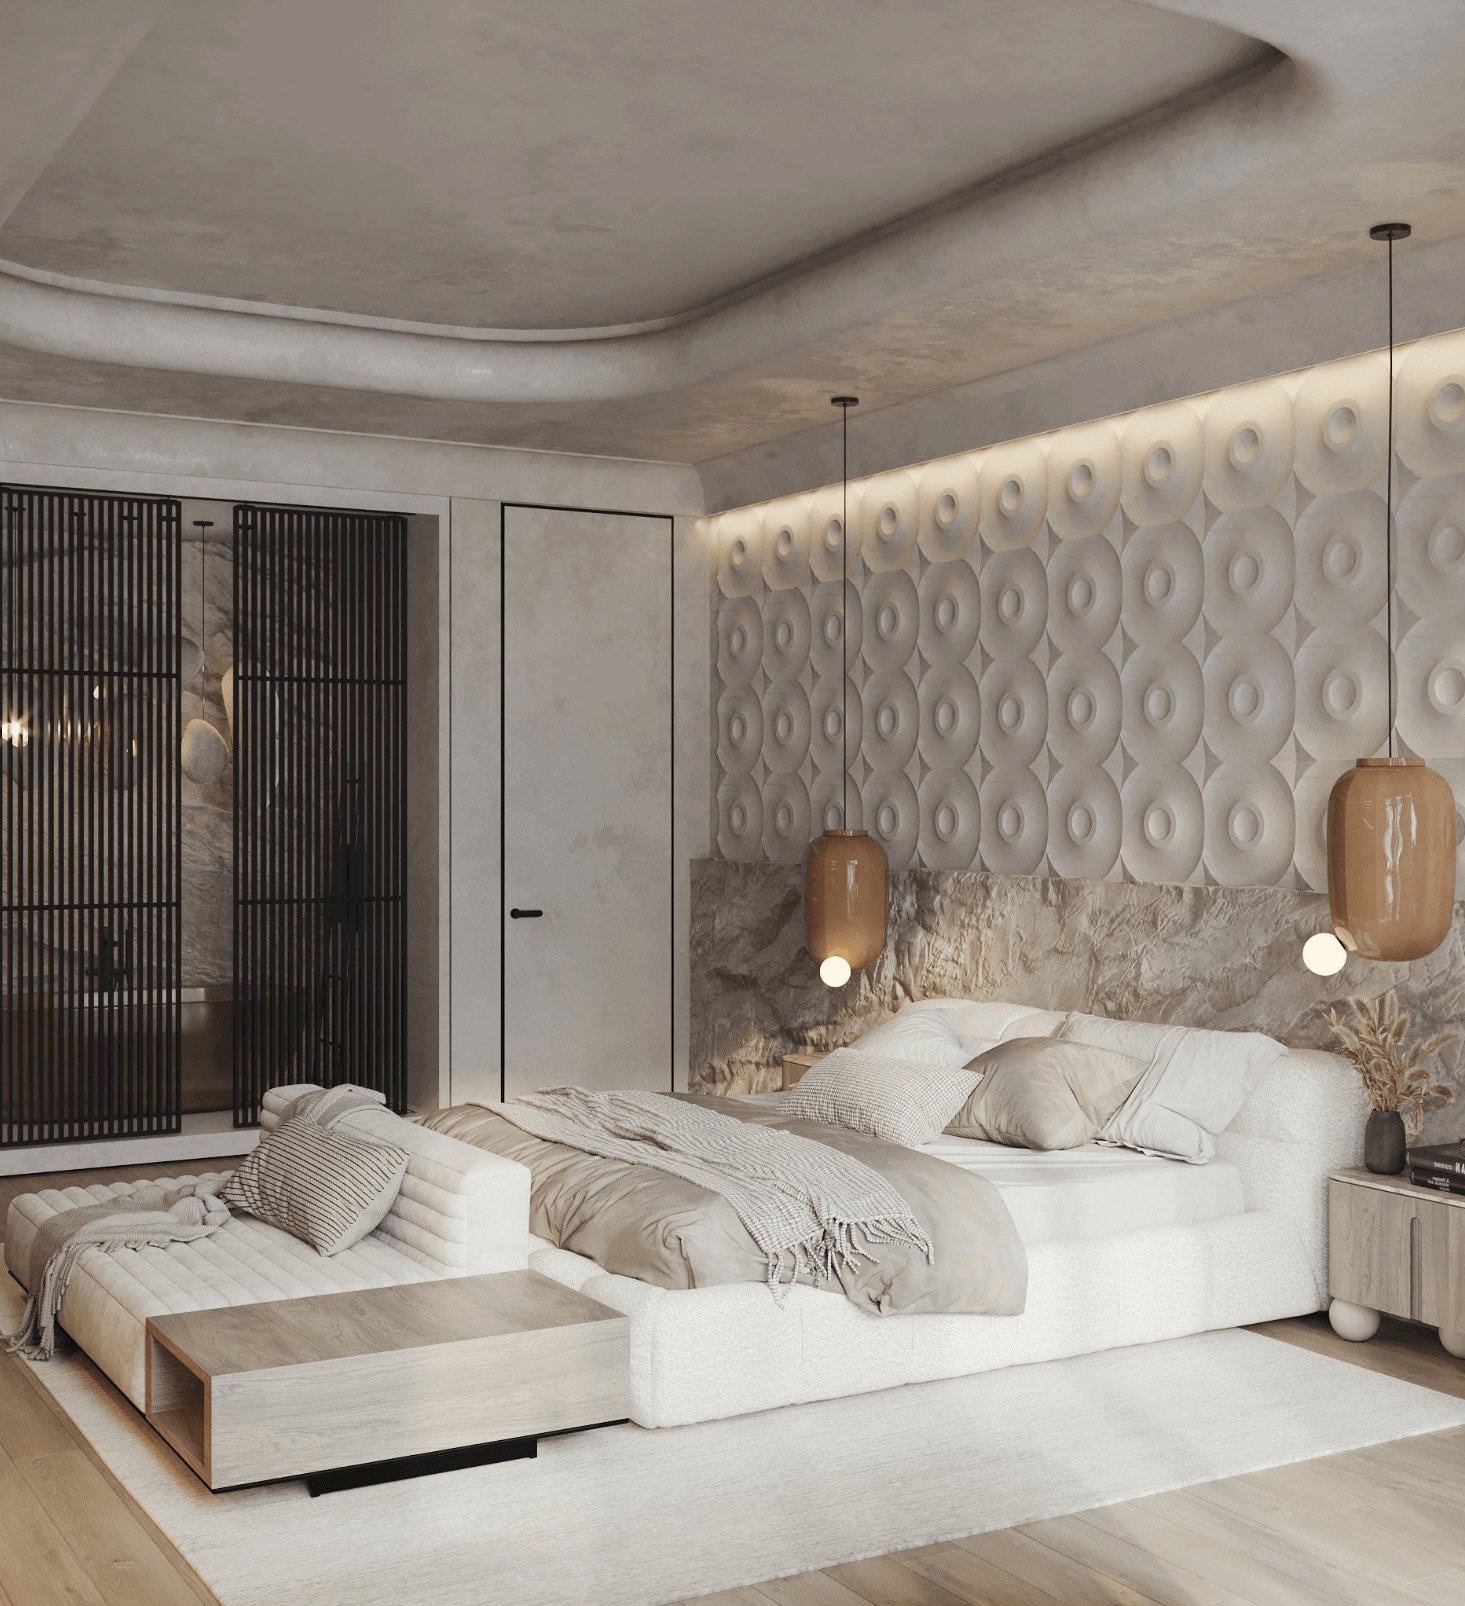 Gạch ốp tường giúp phòng ngủ thẩm mỹ hơn